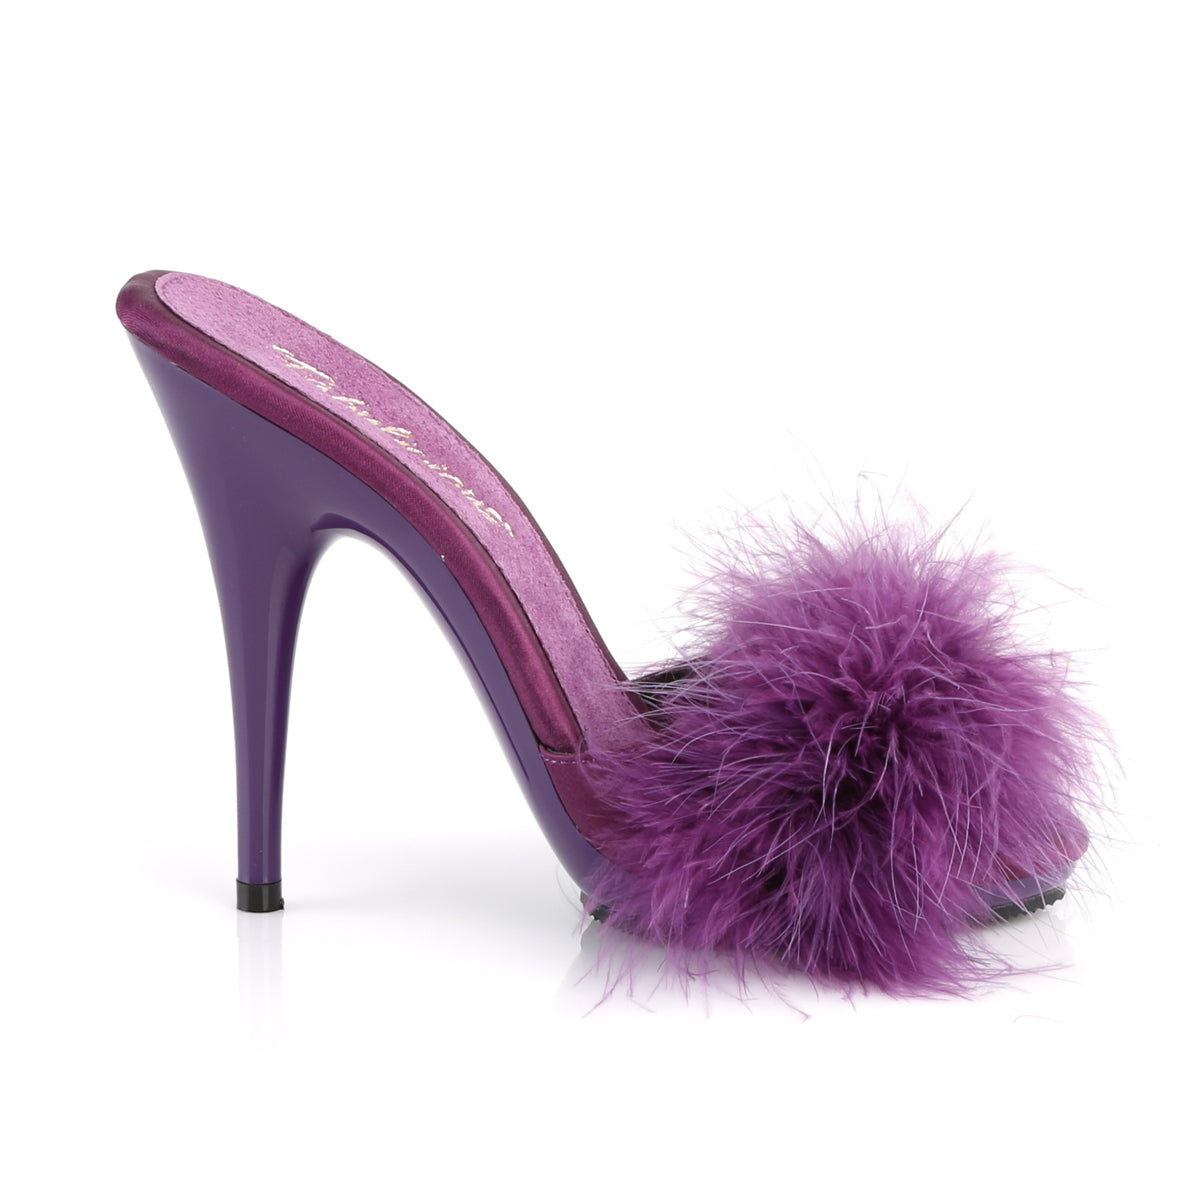 Fabulicious Sandalias para mujer POISE-501F Purple Satin-Marabou Piel / Purple